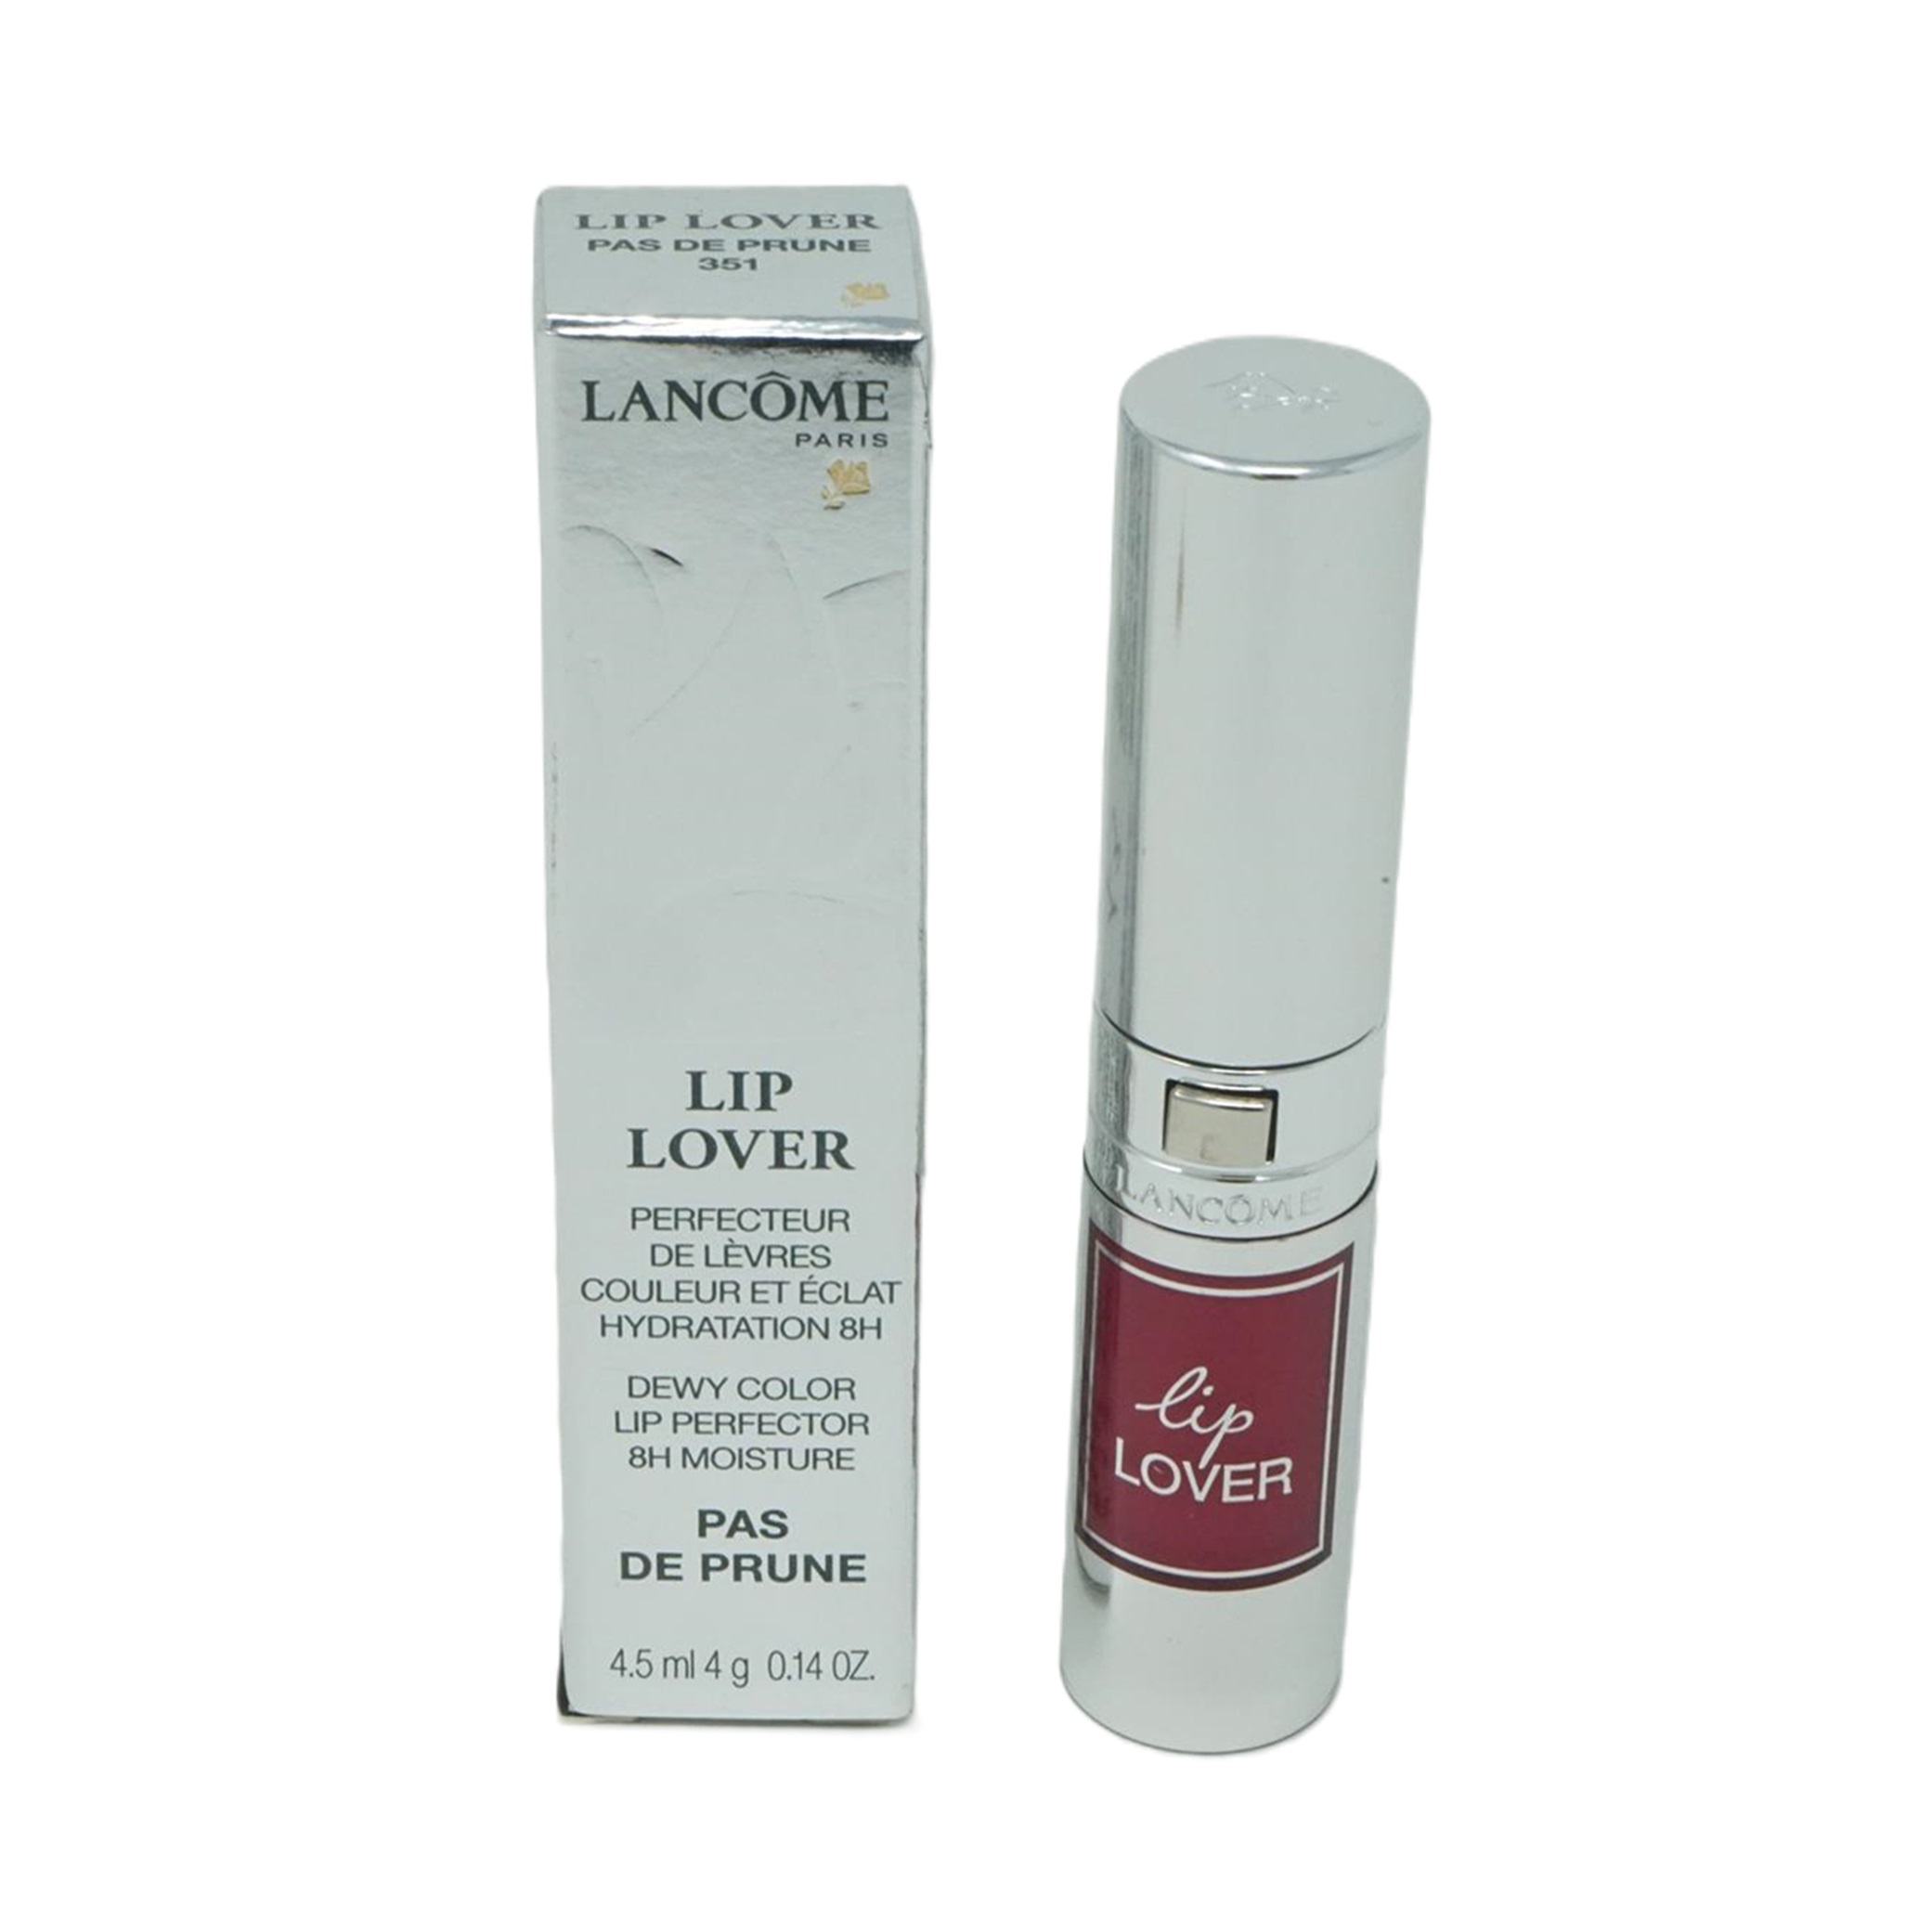 Lancome Lipgloss Lover Dewy Color Pas de Prune 351